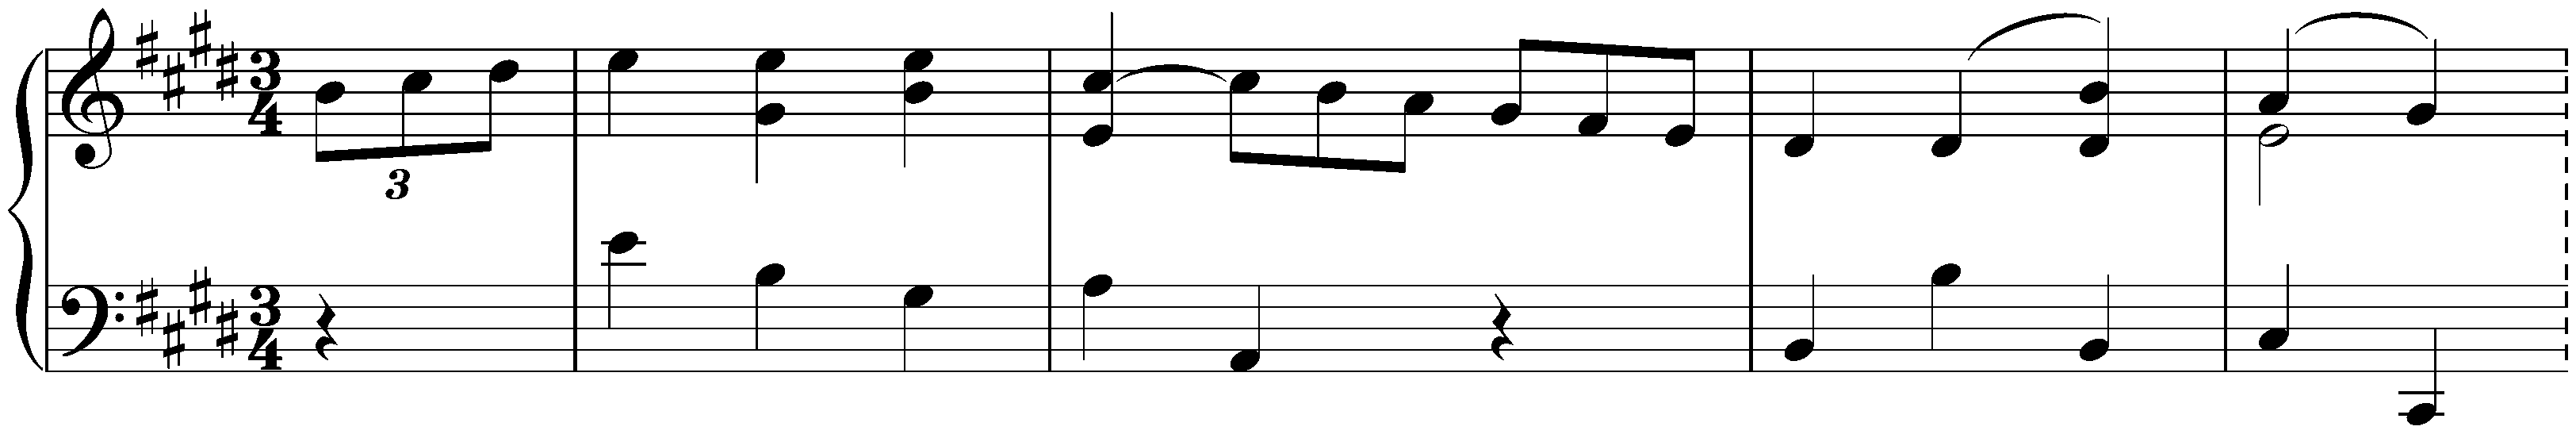 Minuet in E major, D 335